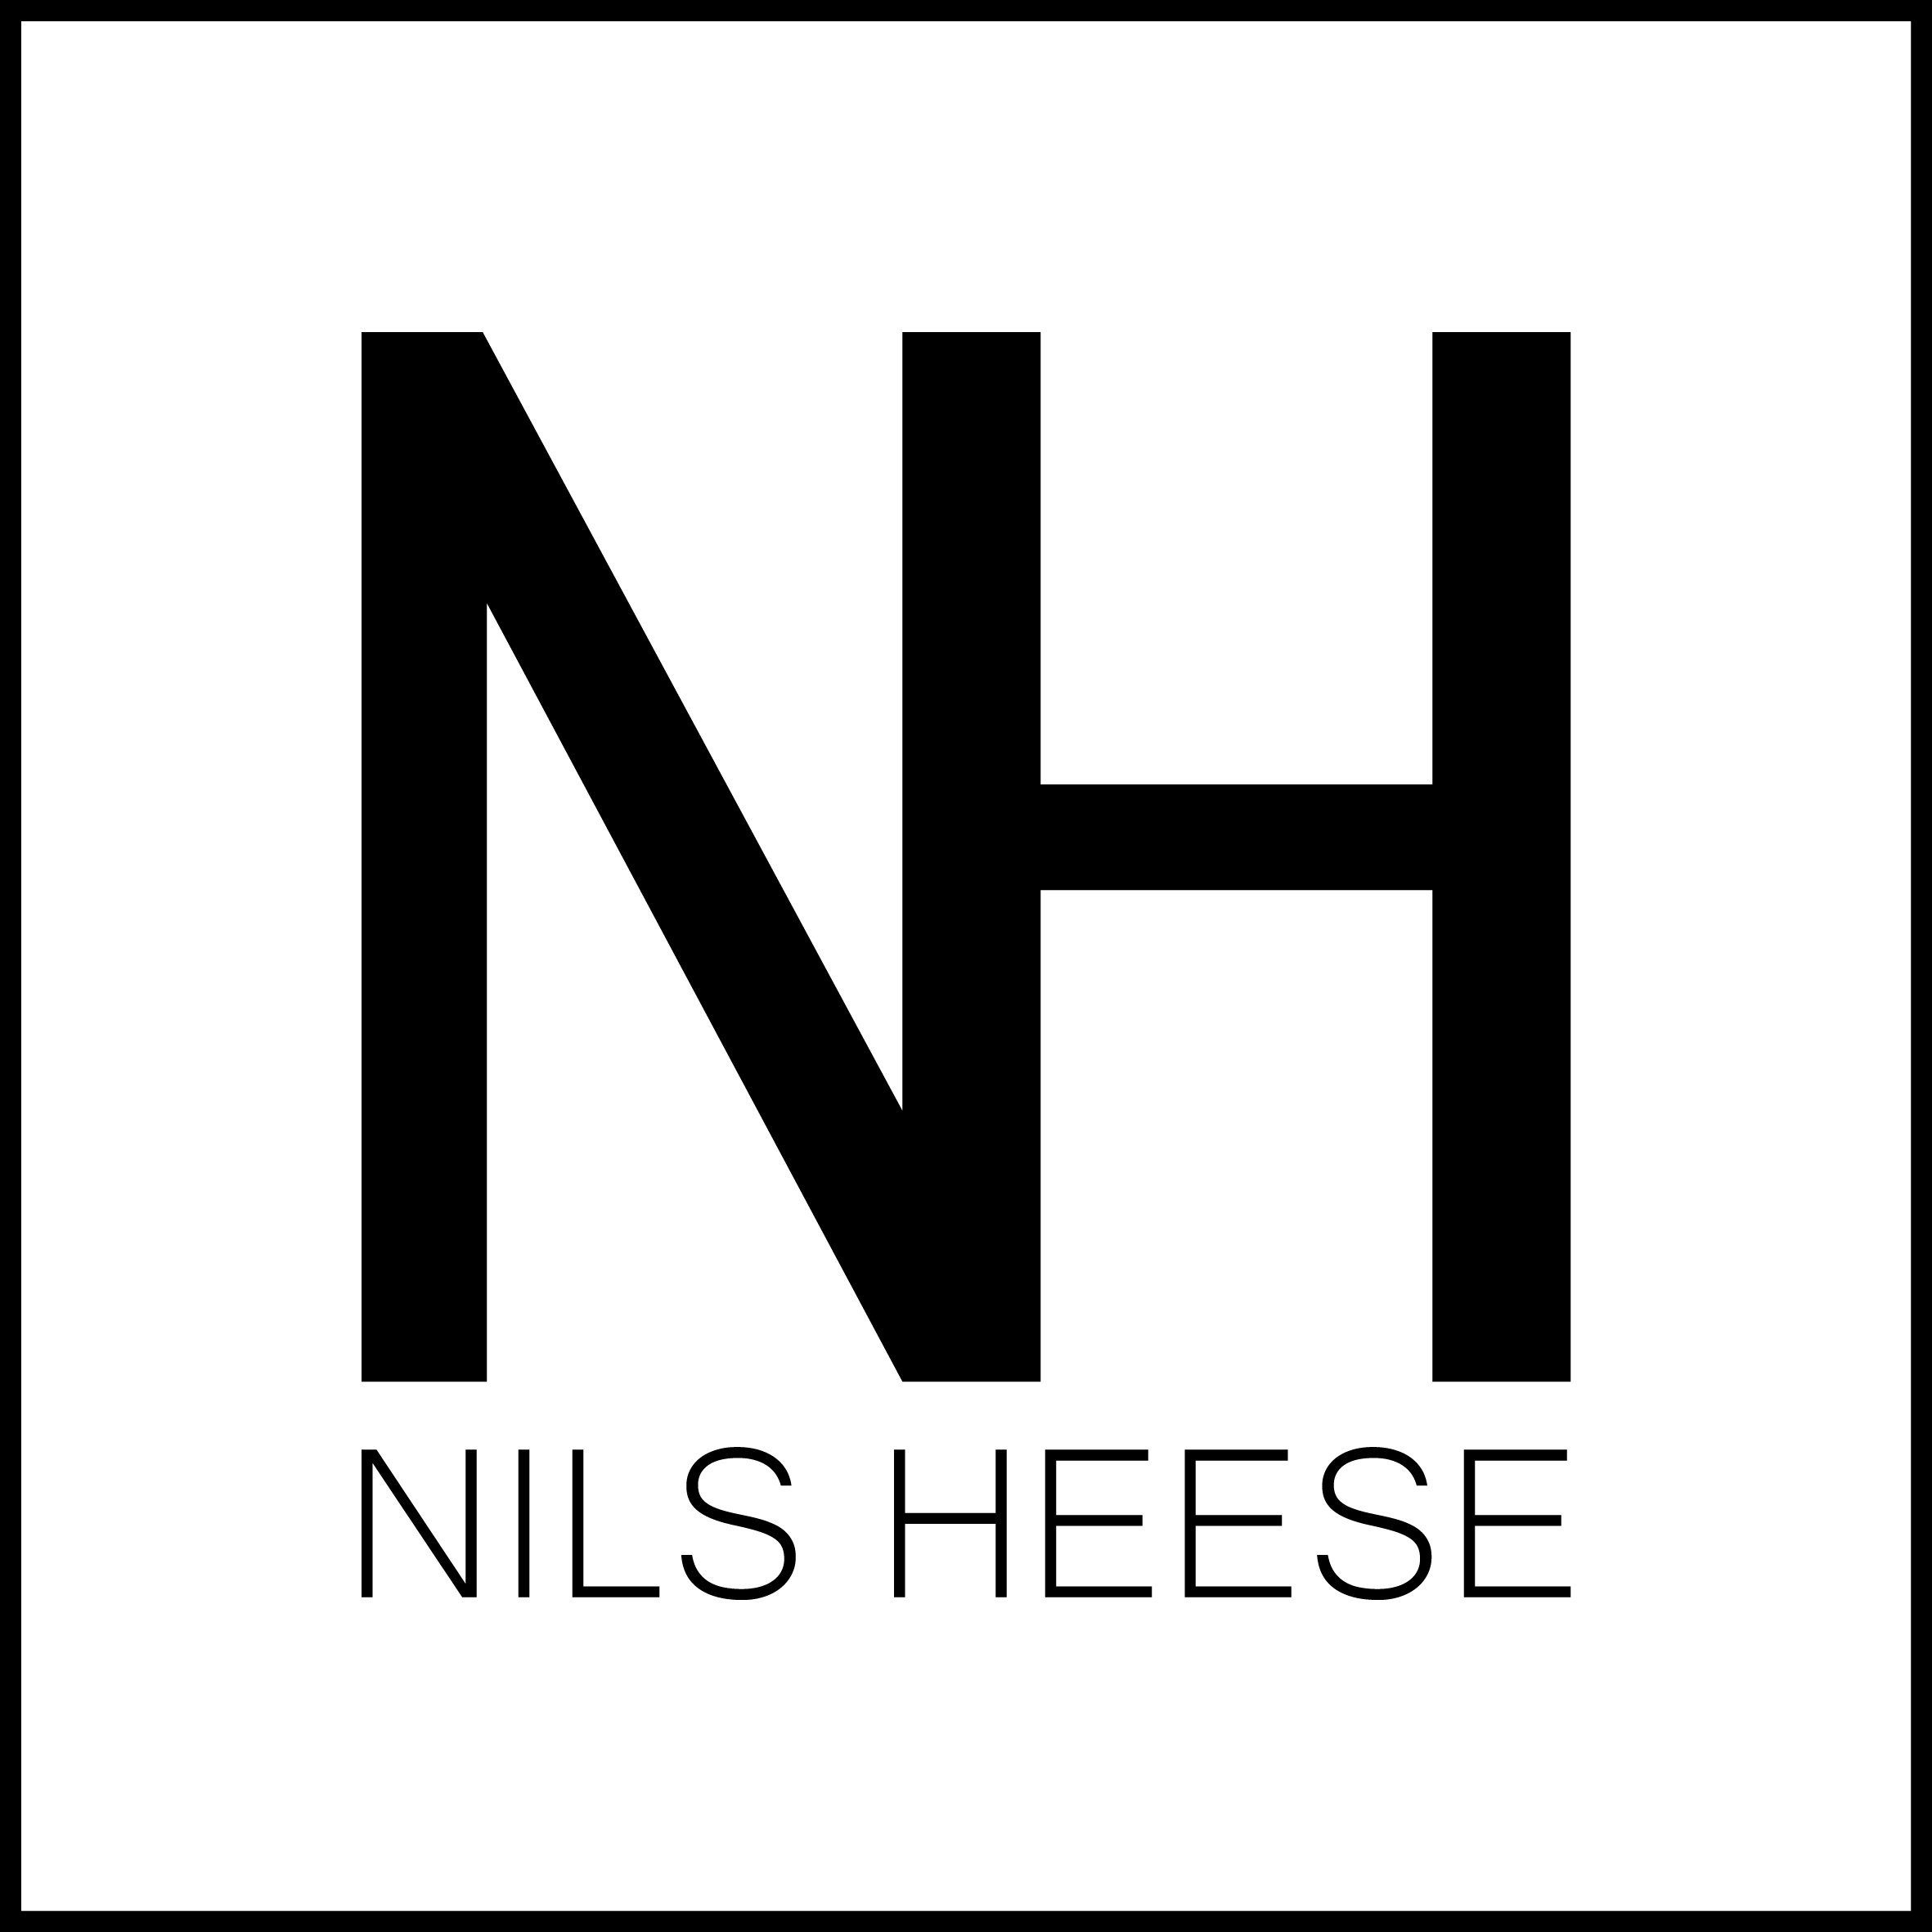 NilsHeese